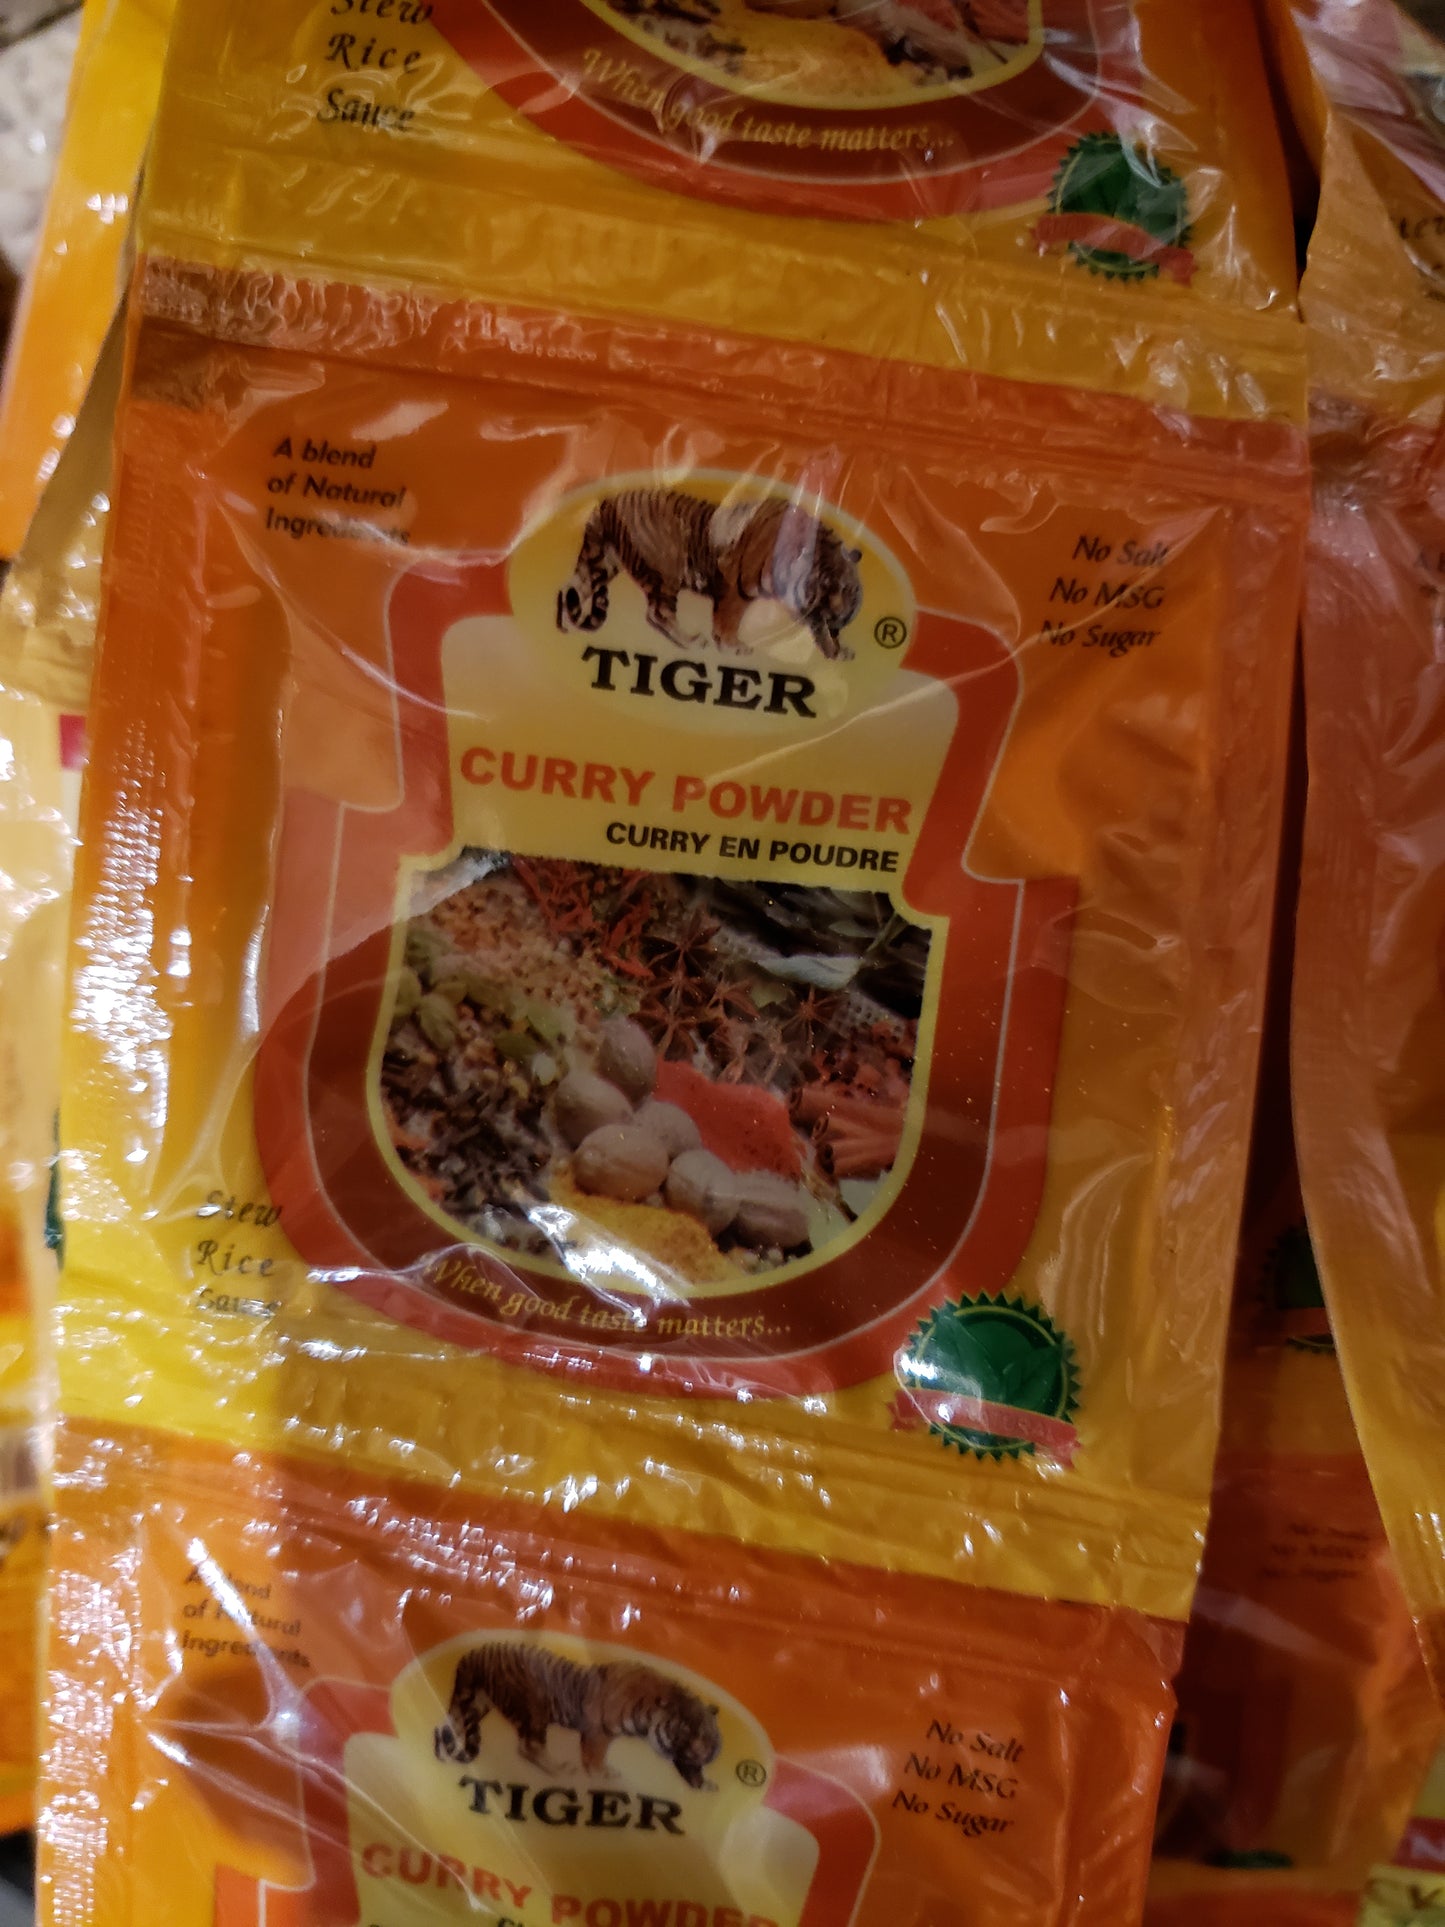 Tiger Curry powder